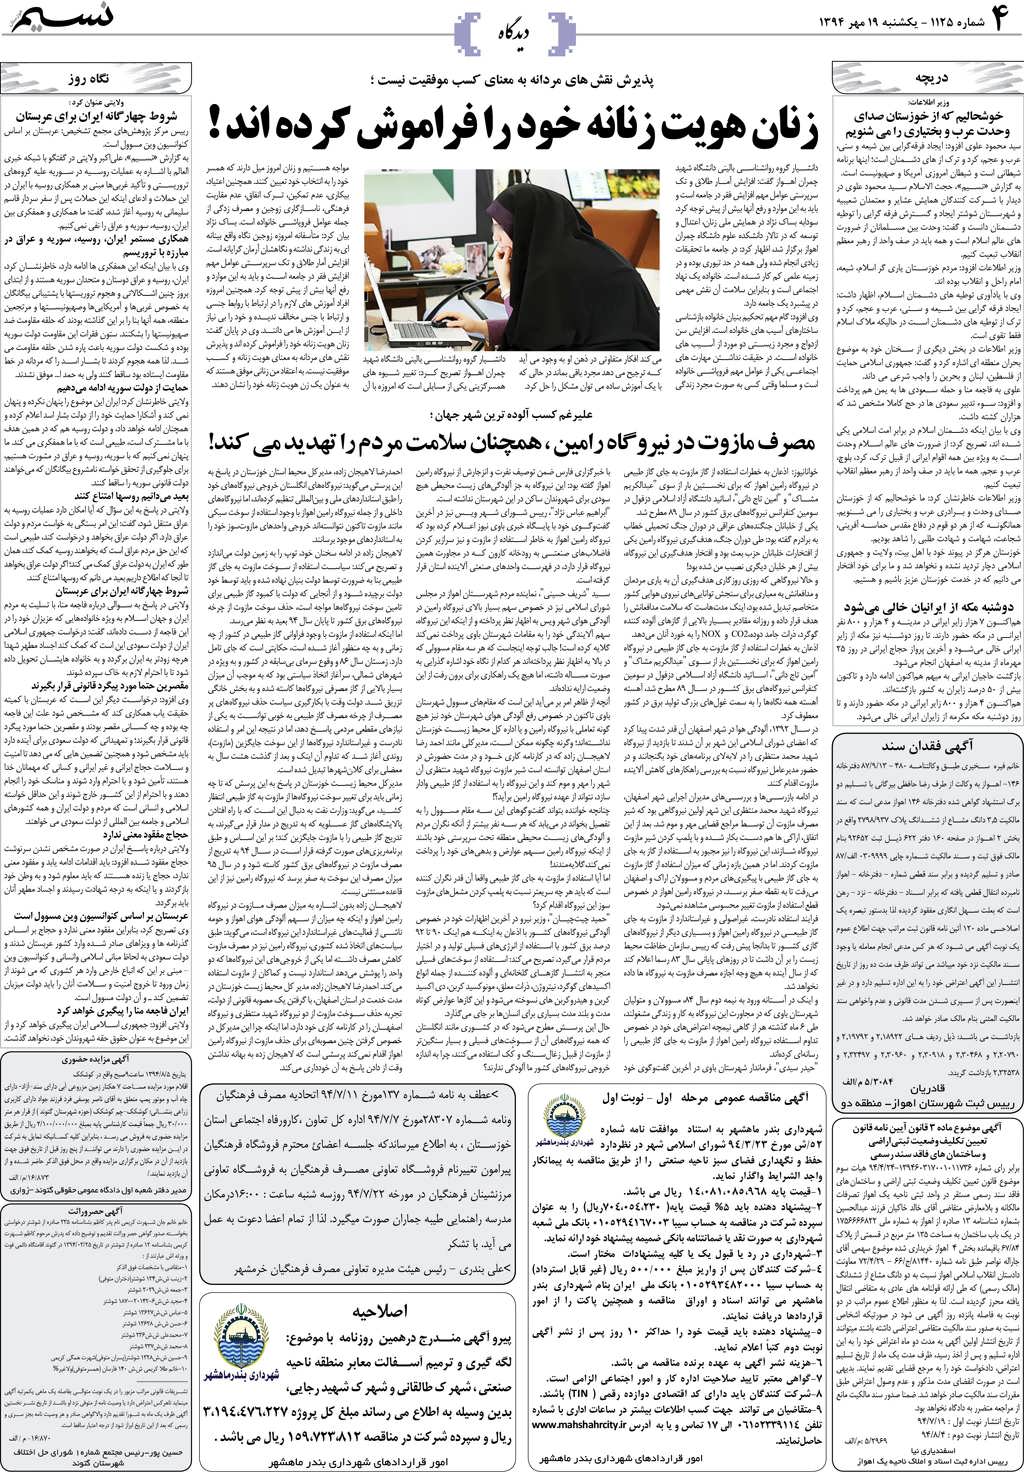 صفحه دیدگاه روزنامه نسیم شماره 1125